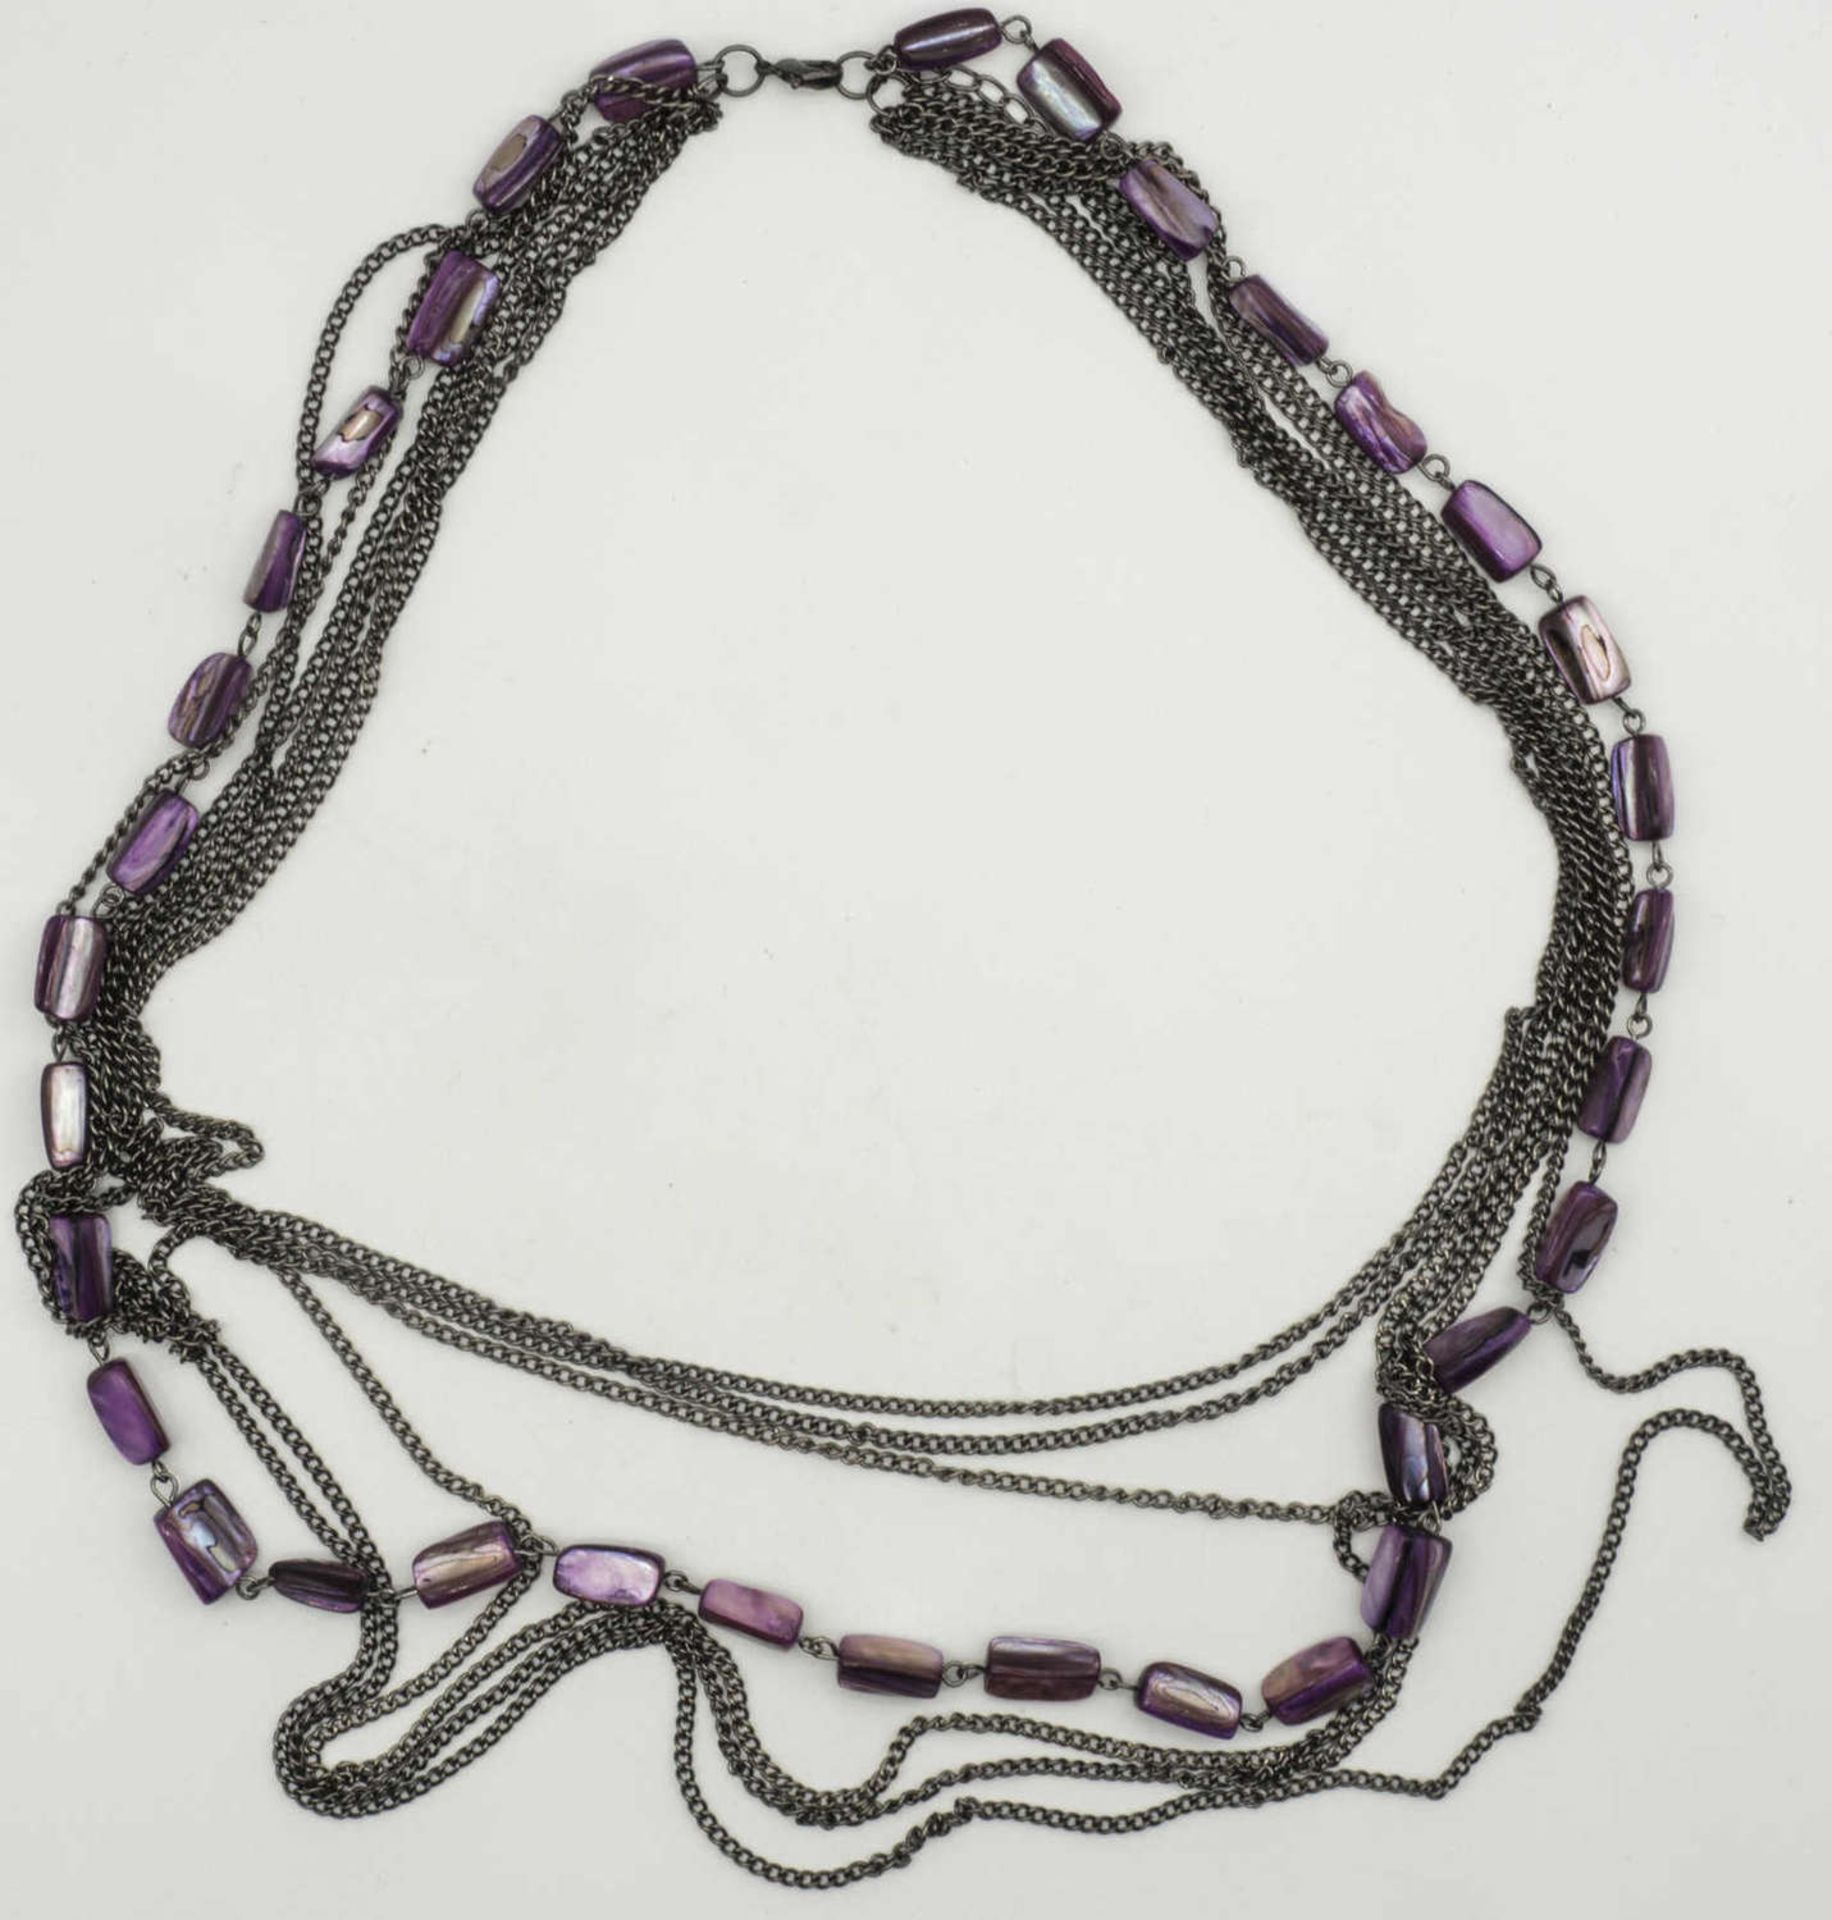 Kette, 7 - Stränge, davon eine mit violetten, irisierenden Steinen. Länge: ca. 66 cm.